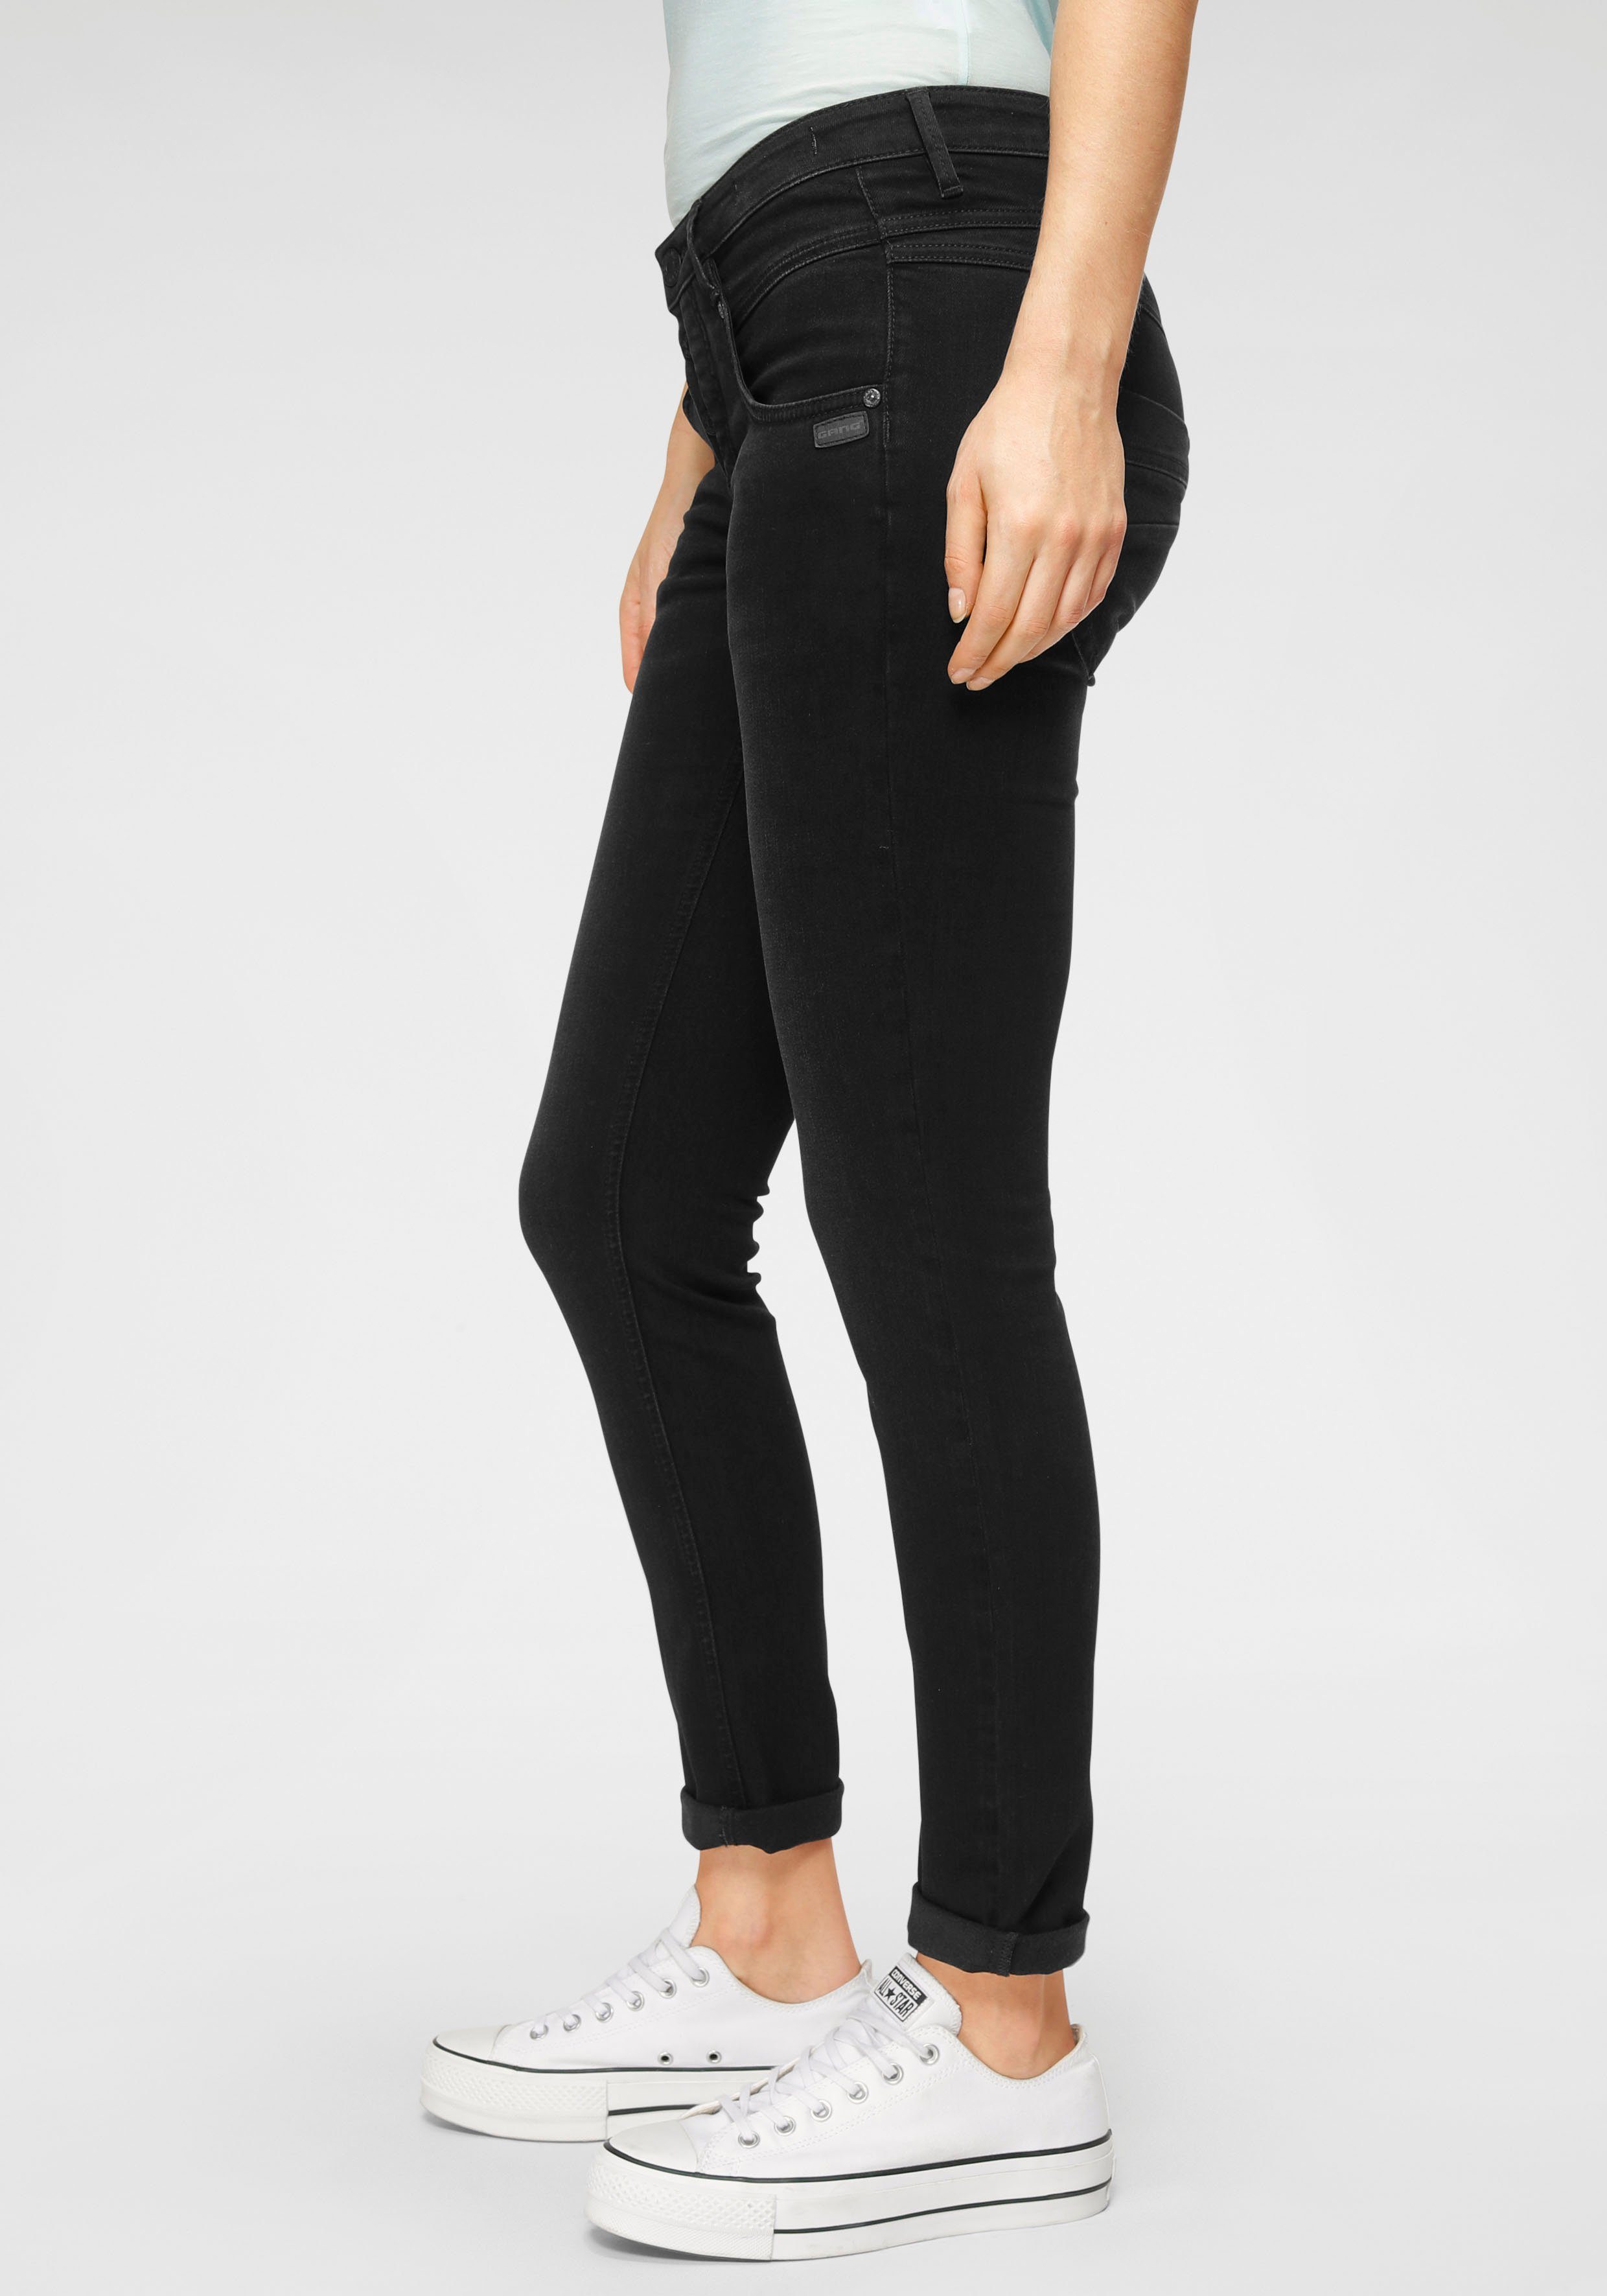 Günstige Jeans für Damen kaufen » Jeanshosen SALE | OTTO